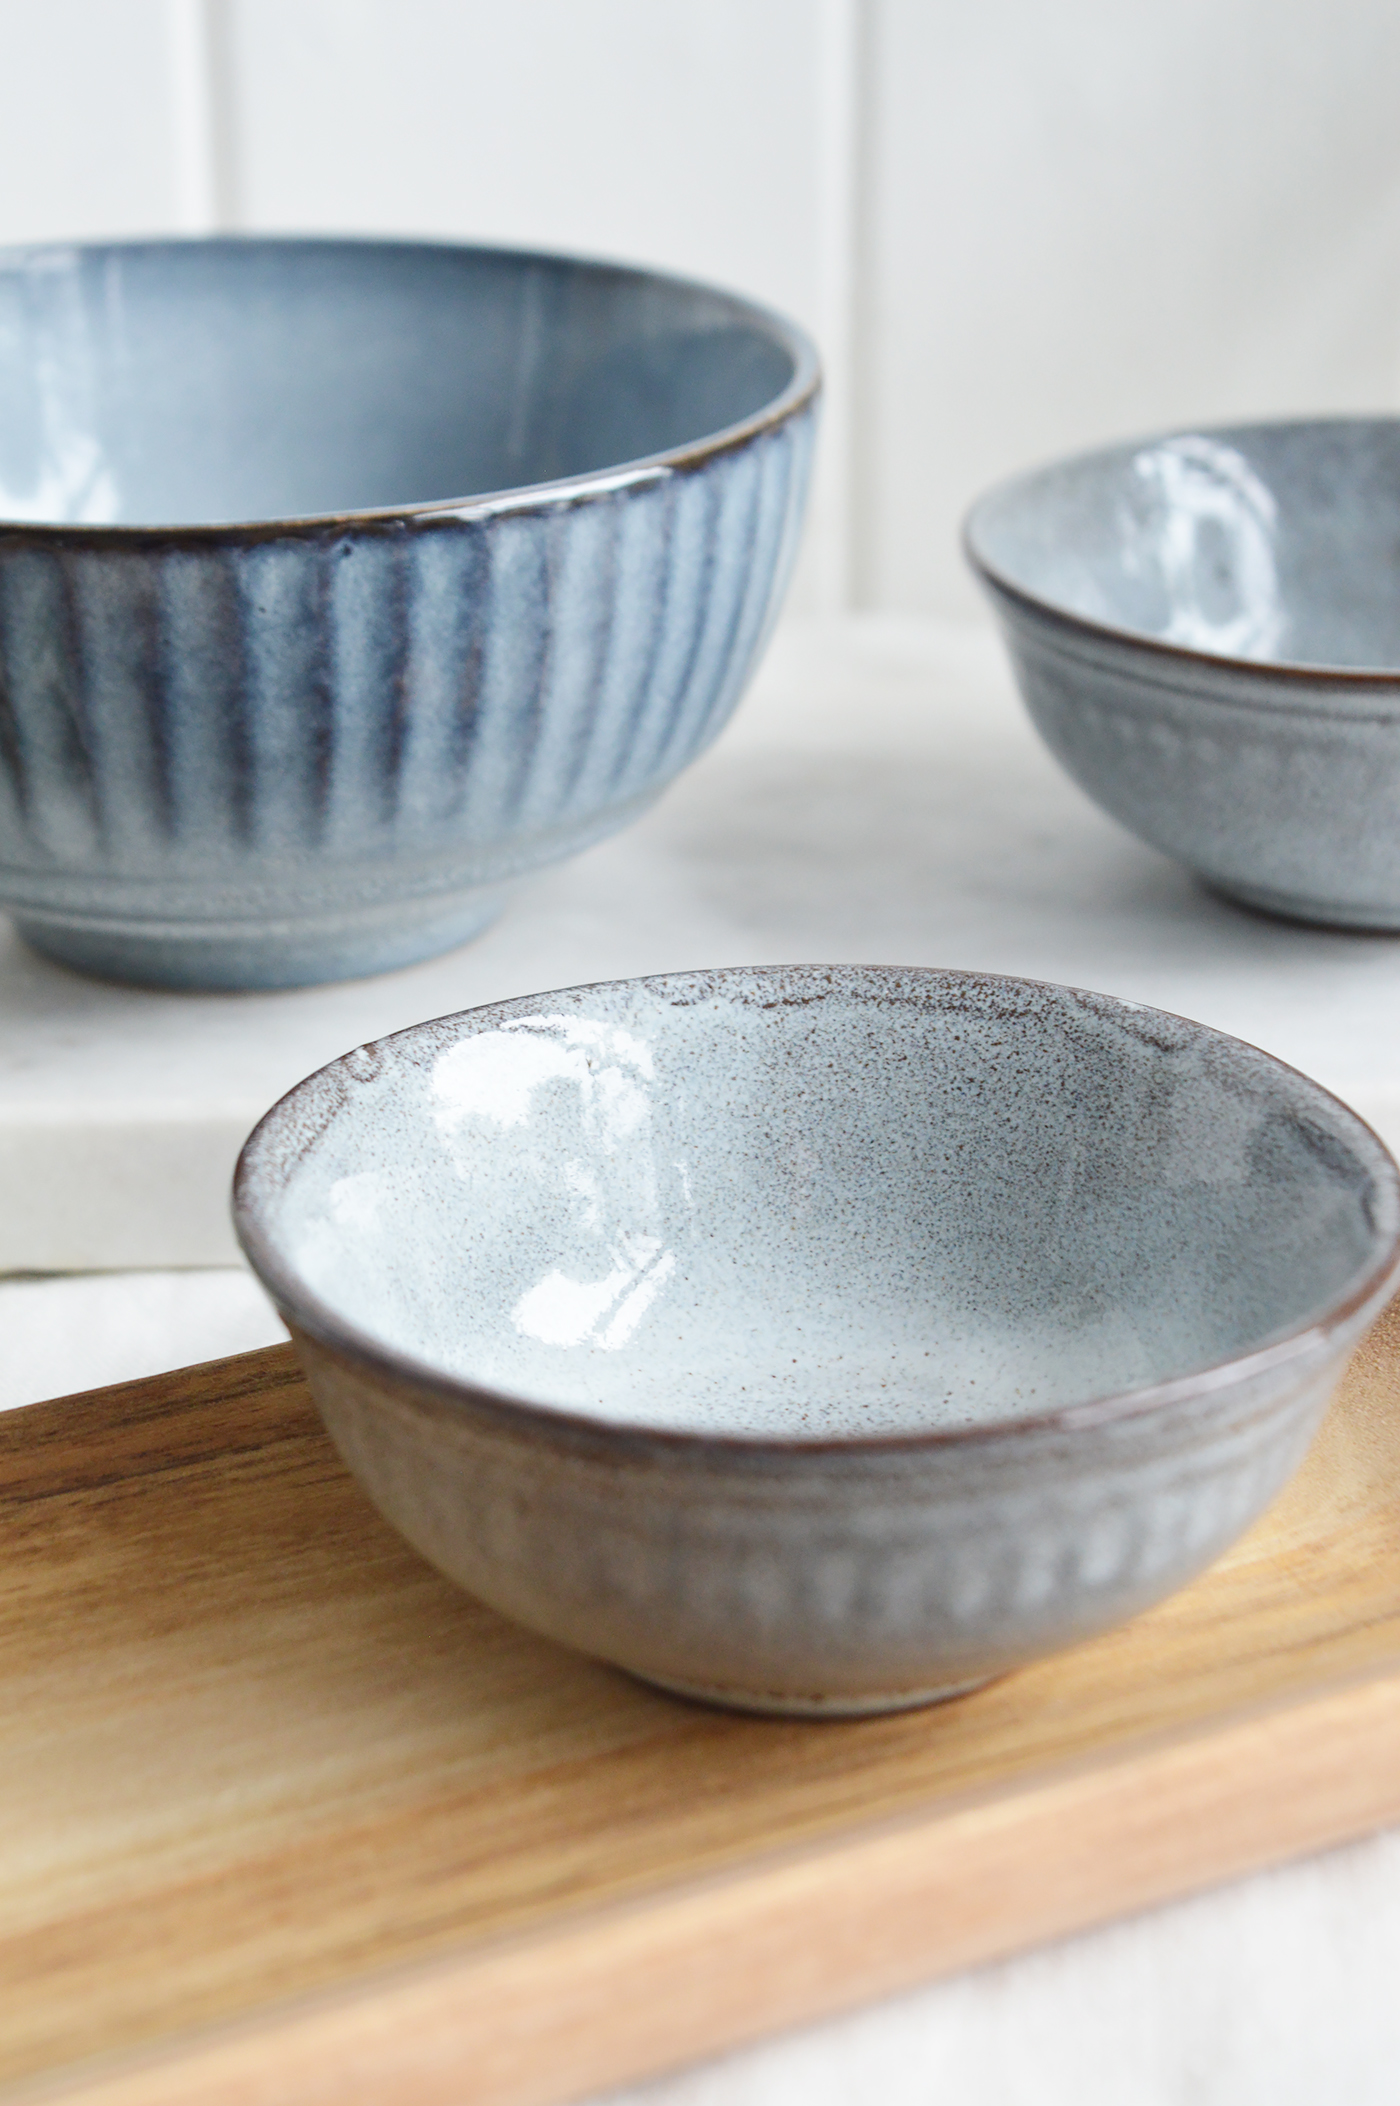  Pilgrim Ceramic Bowls - Blue Grey Ribbed for New England, farmhouse,  Country and coastal homes and interior deco